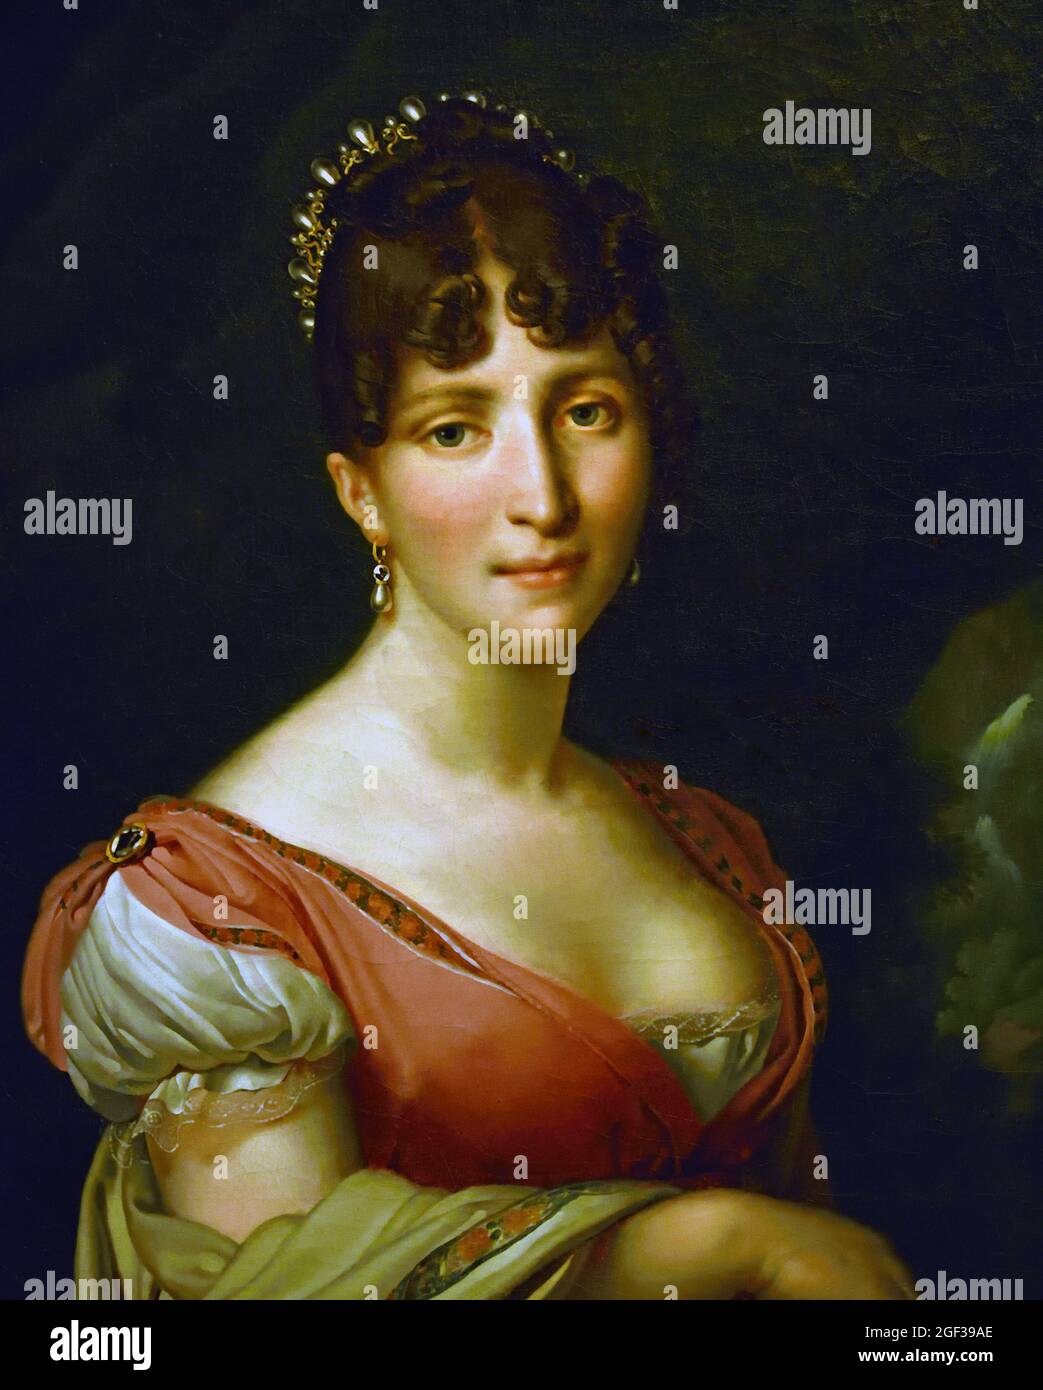 Hortense de Beauharnais, Reine des pays-Bas, Anne-Louis Girodet-Trioson, 1805 - 1809 Néerlandais, pays-Bas. Huile sur toile, 60 × 49. Hortense était l'belle-fille de l'empereur Napoléon. Par son mariage avec le frère de Napoléon, Lodewijk Napoleon, elle devient reine de Hollande en 1806. Le mariage a été infructueux et Hortense a pensé que la Hollande était un pays froid et sombre. Elle préférait vivre avec ses fils à Paris, au tribunal. Banque D'Images